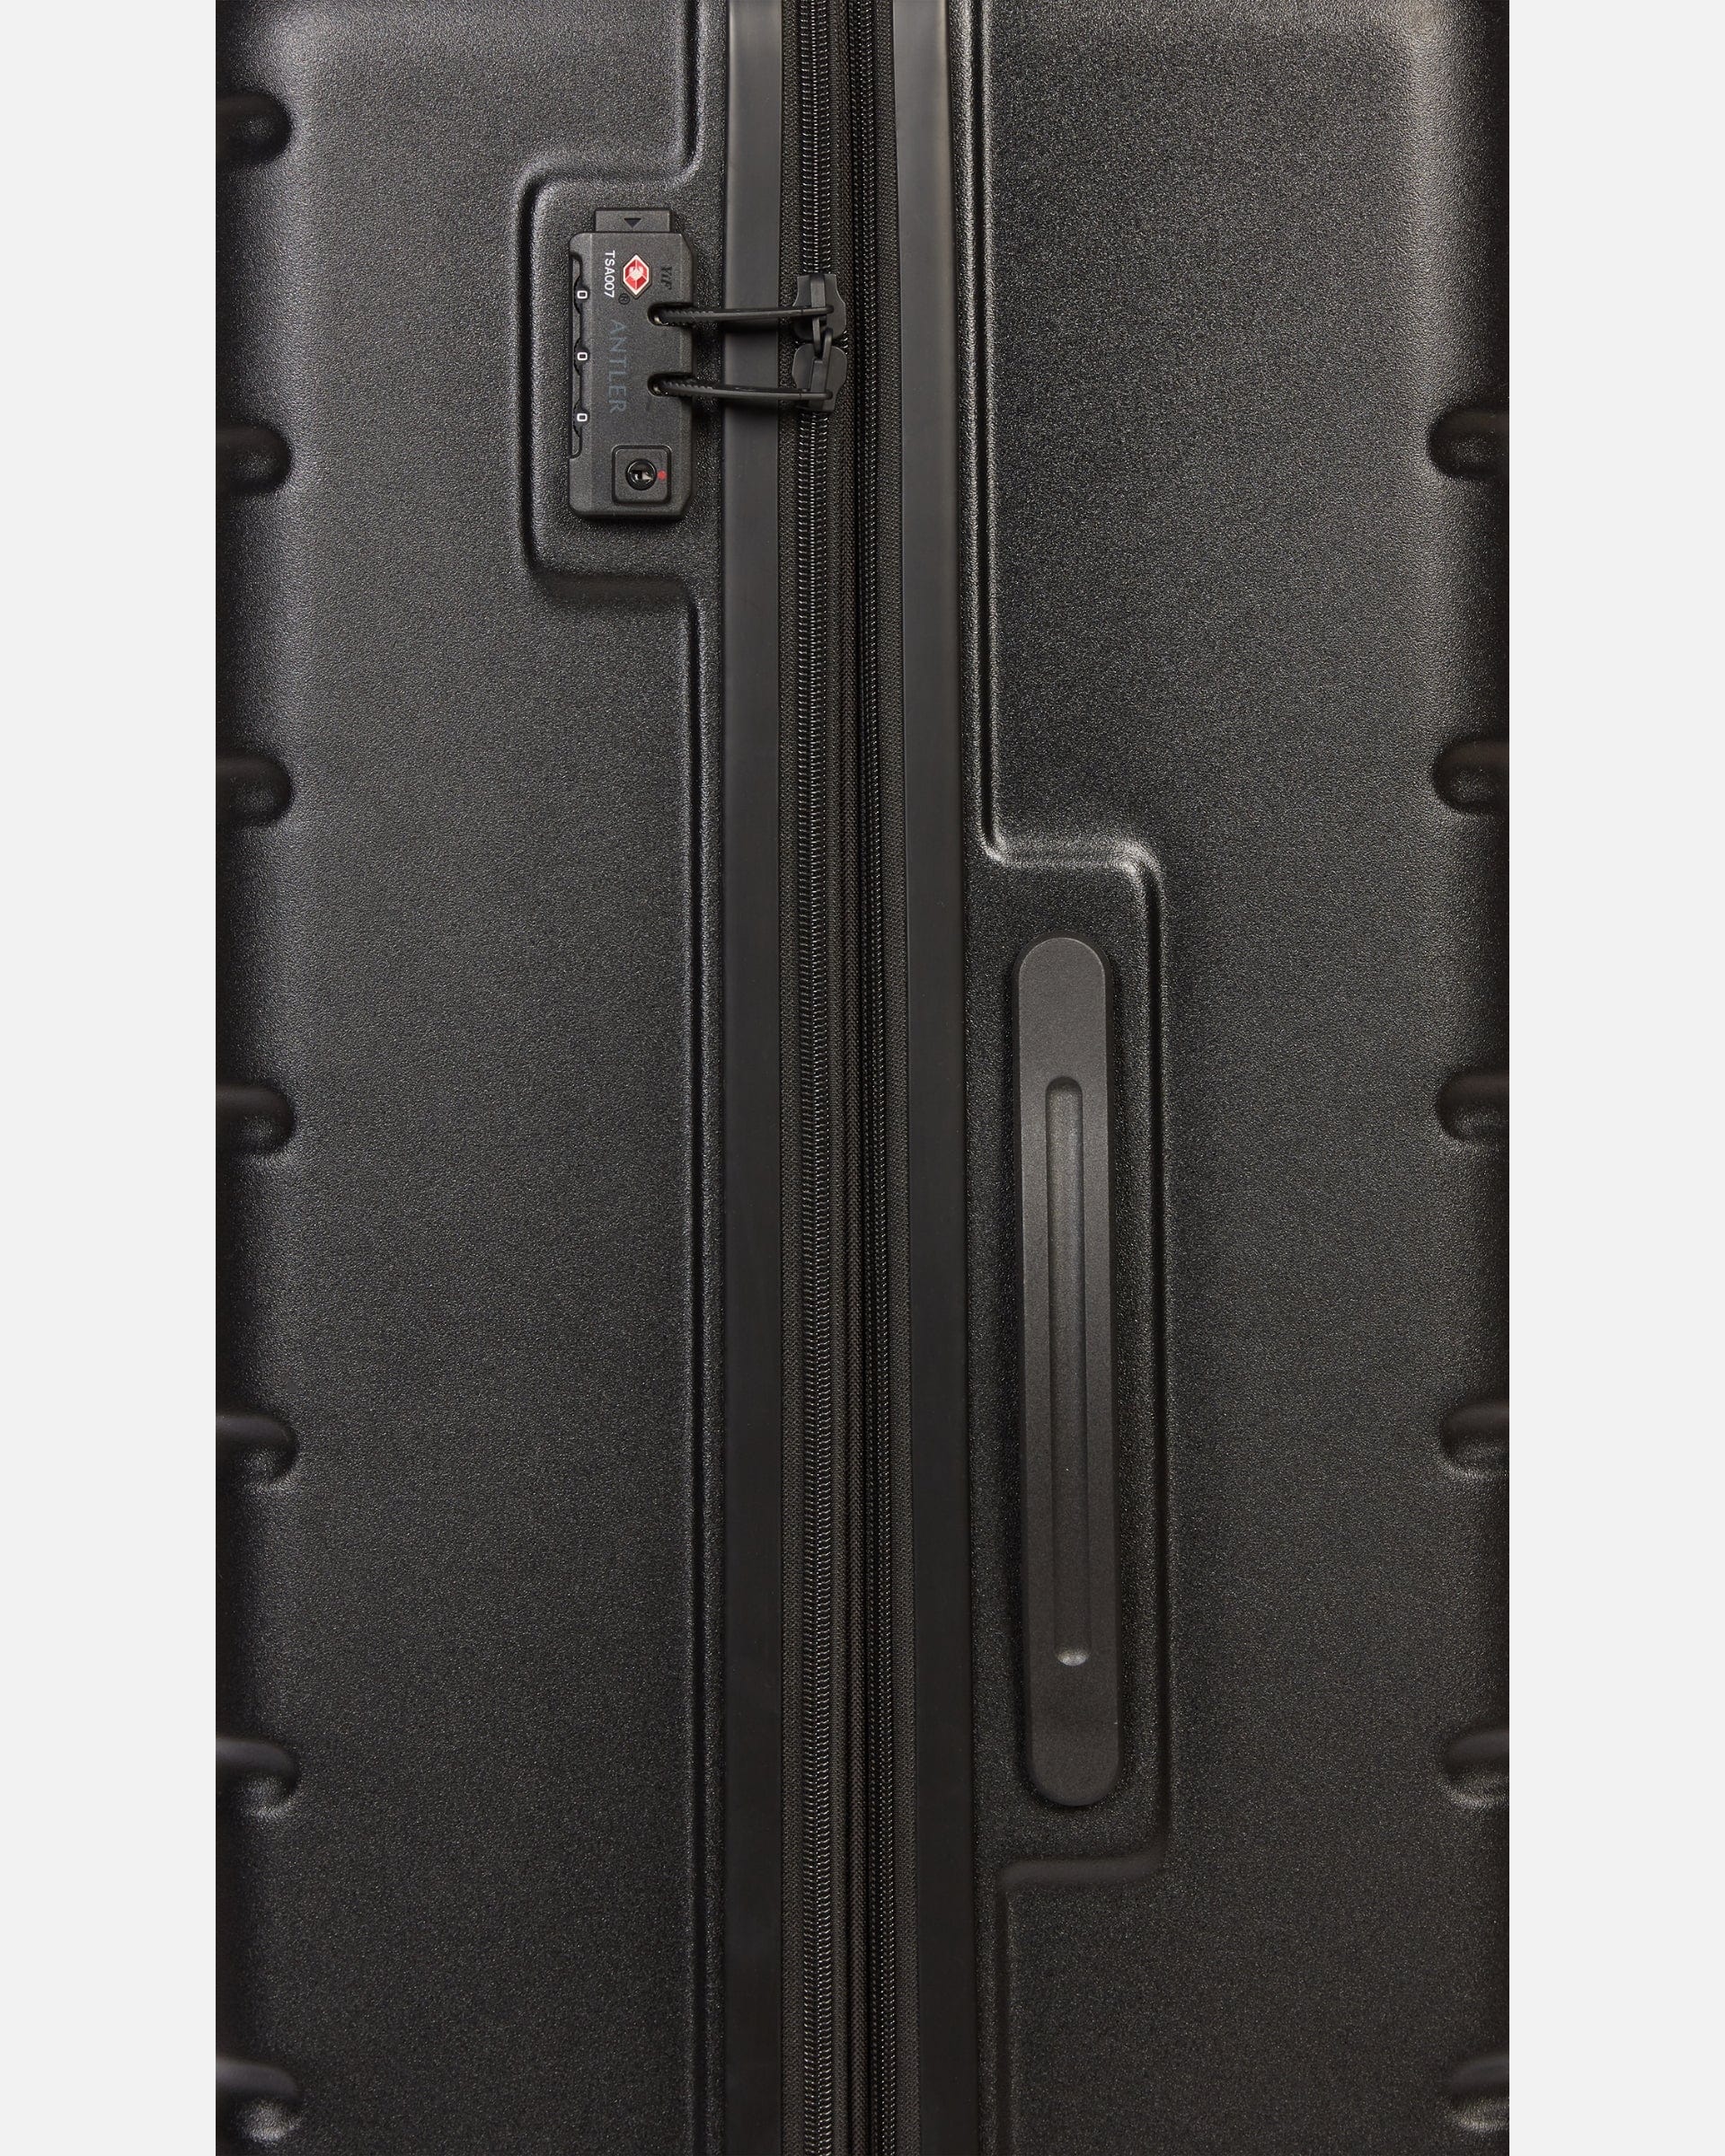 Antler UK Luggage -  Logo large in black - Hard Suitcases Logo Large Suitcase Black | Lightweight Hard Shell Luggage